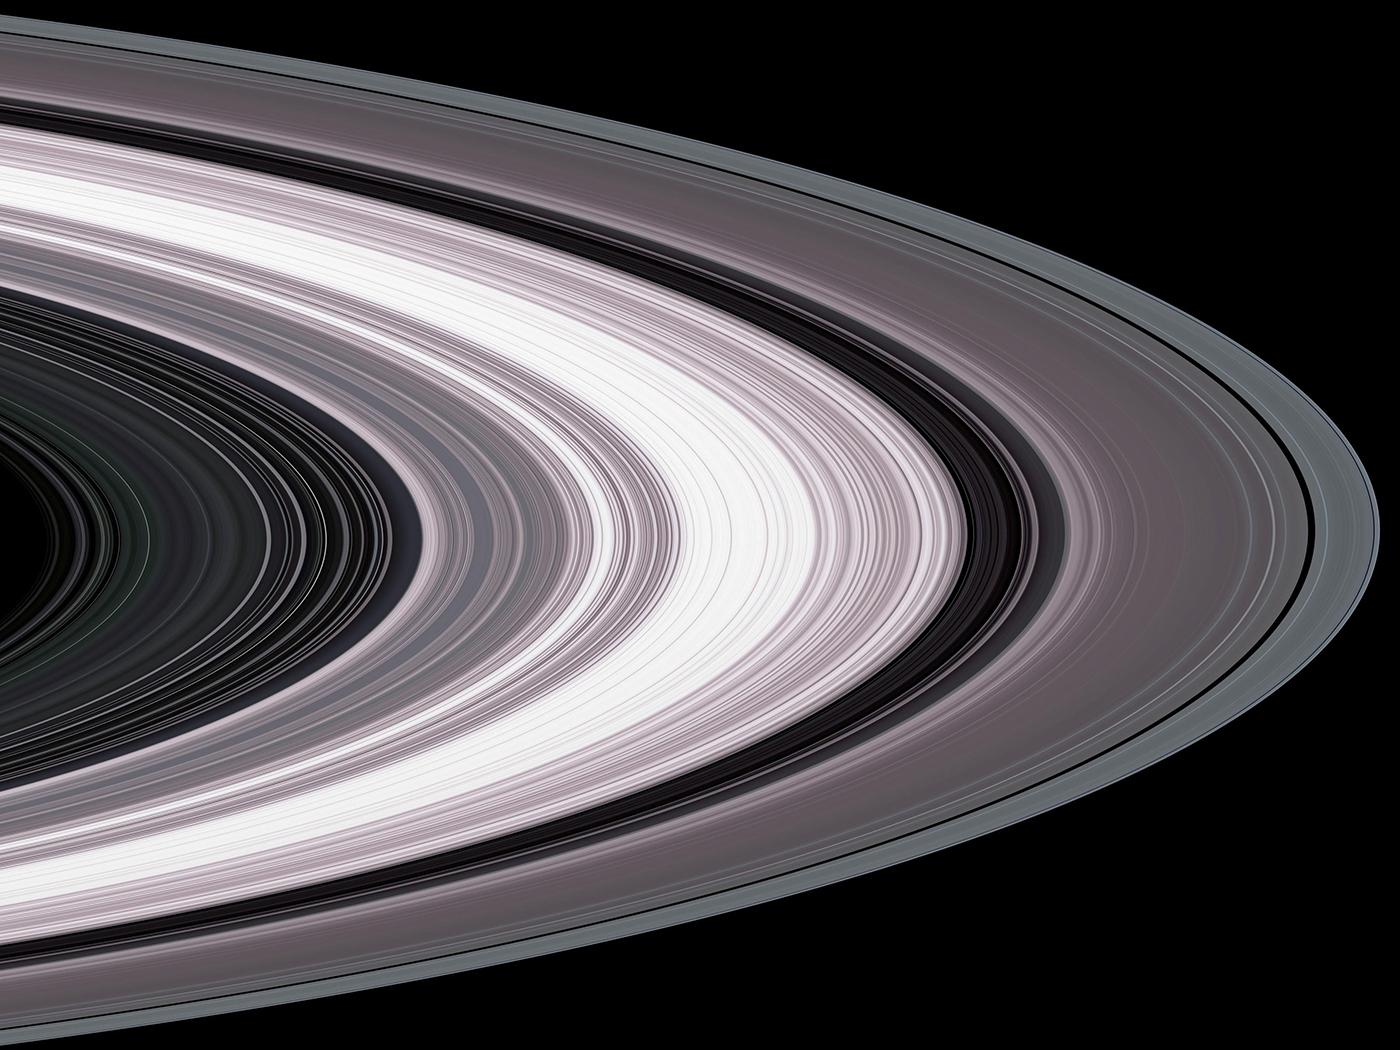 Saturn's rings. Image: Courtesy NASA